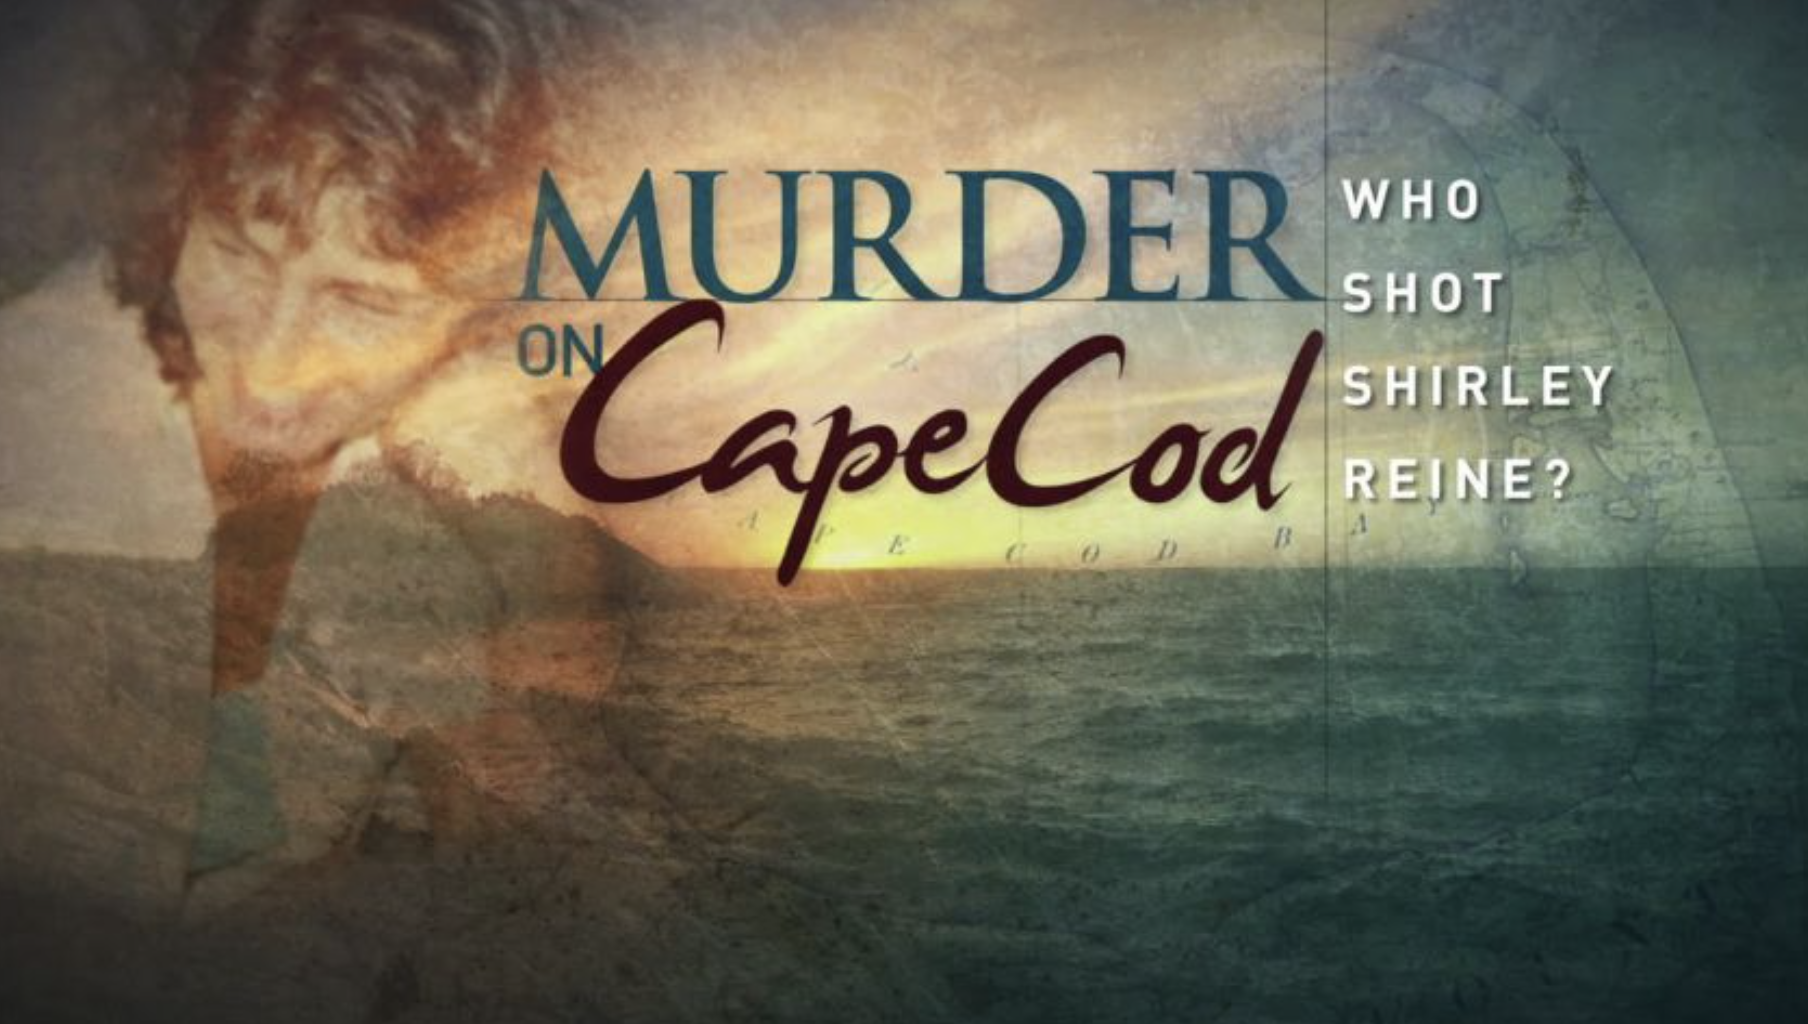 Murder on Cape Cod: Who Shot Shirley Reine?